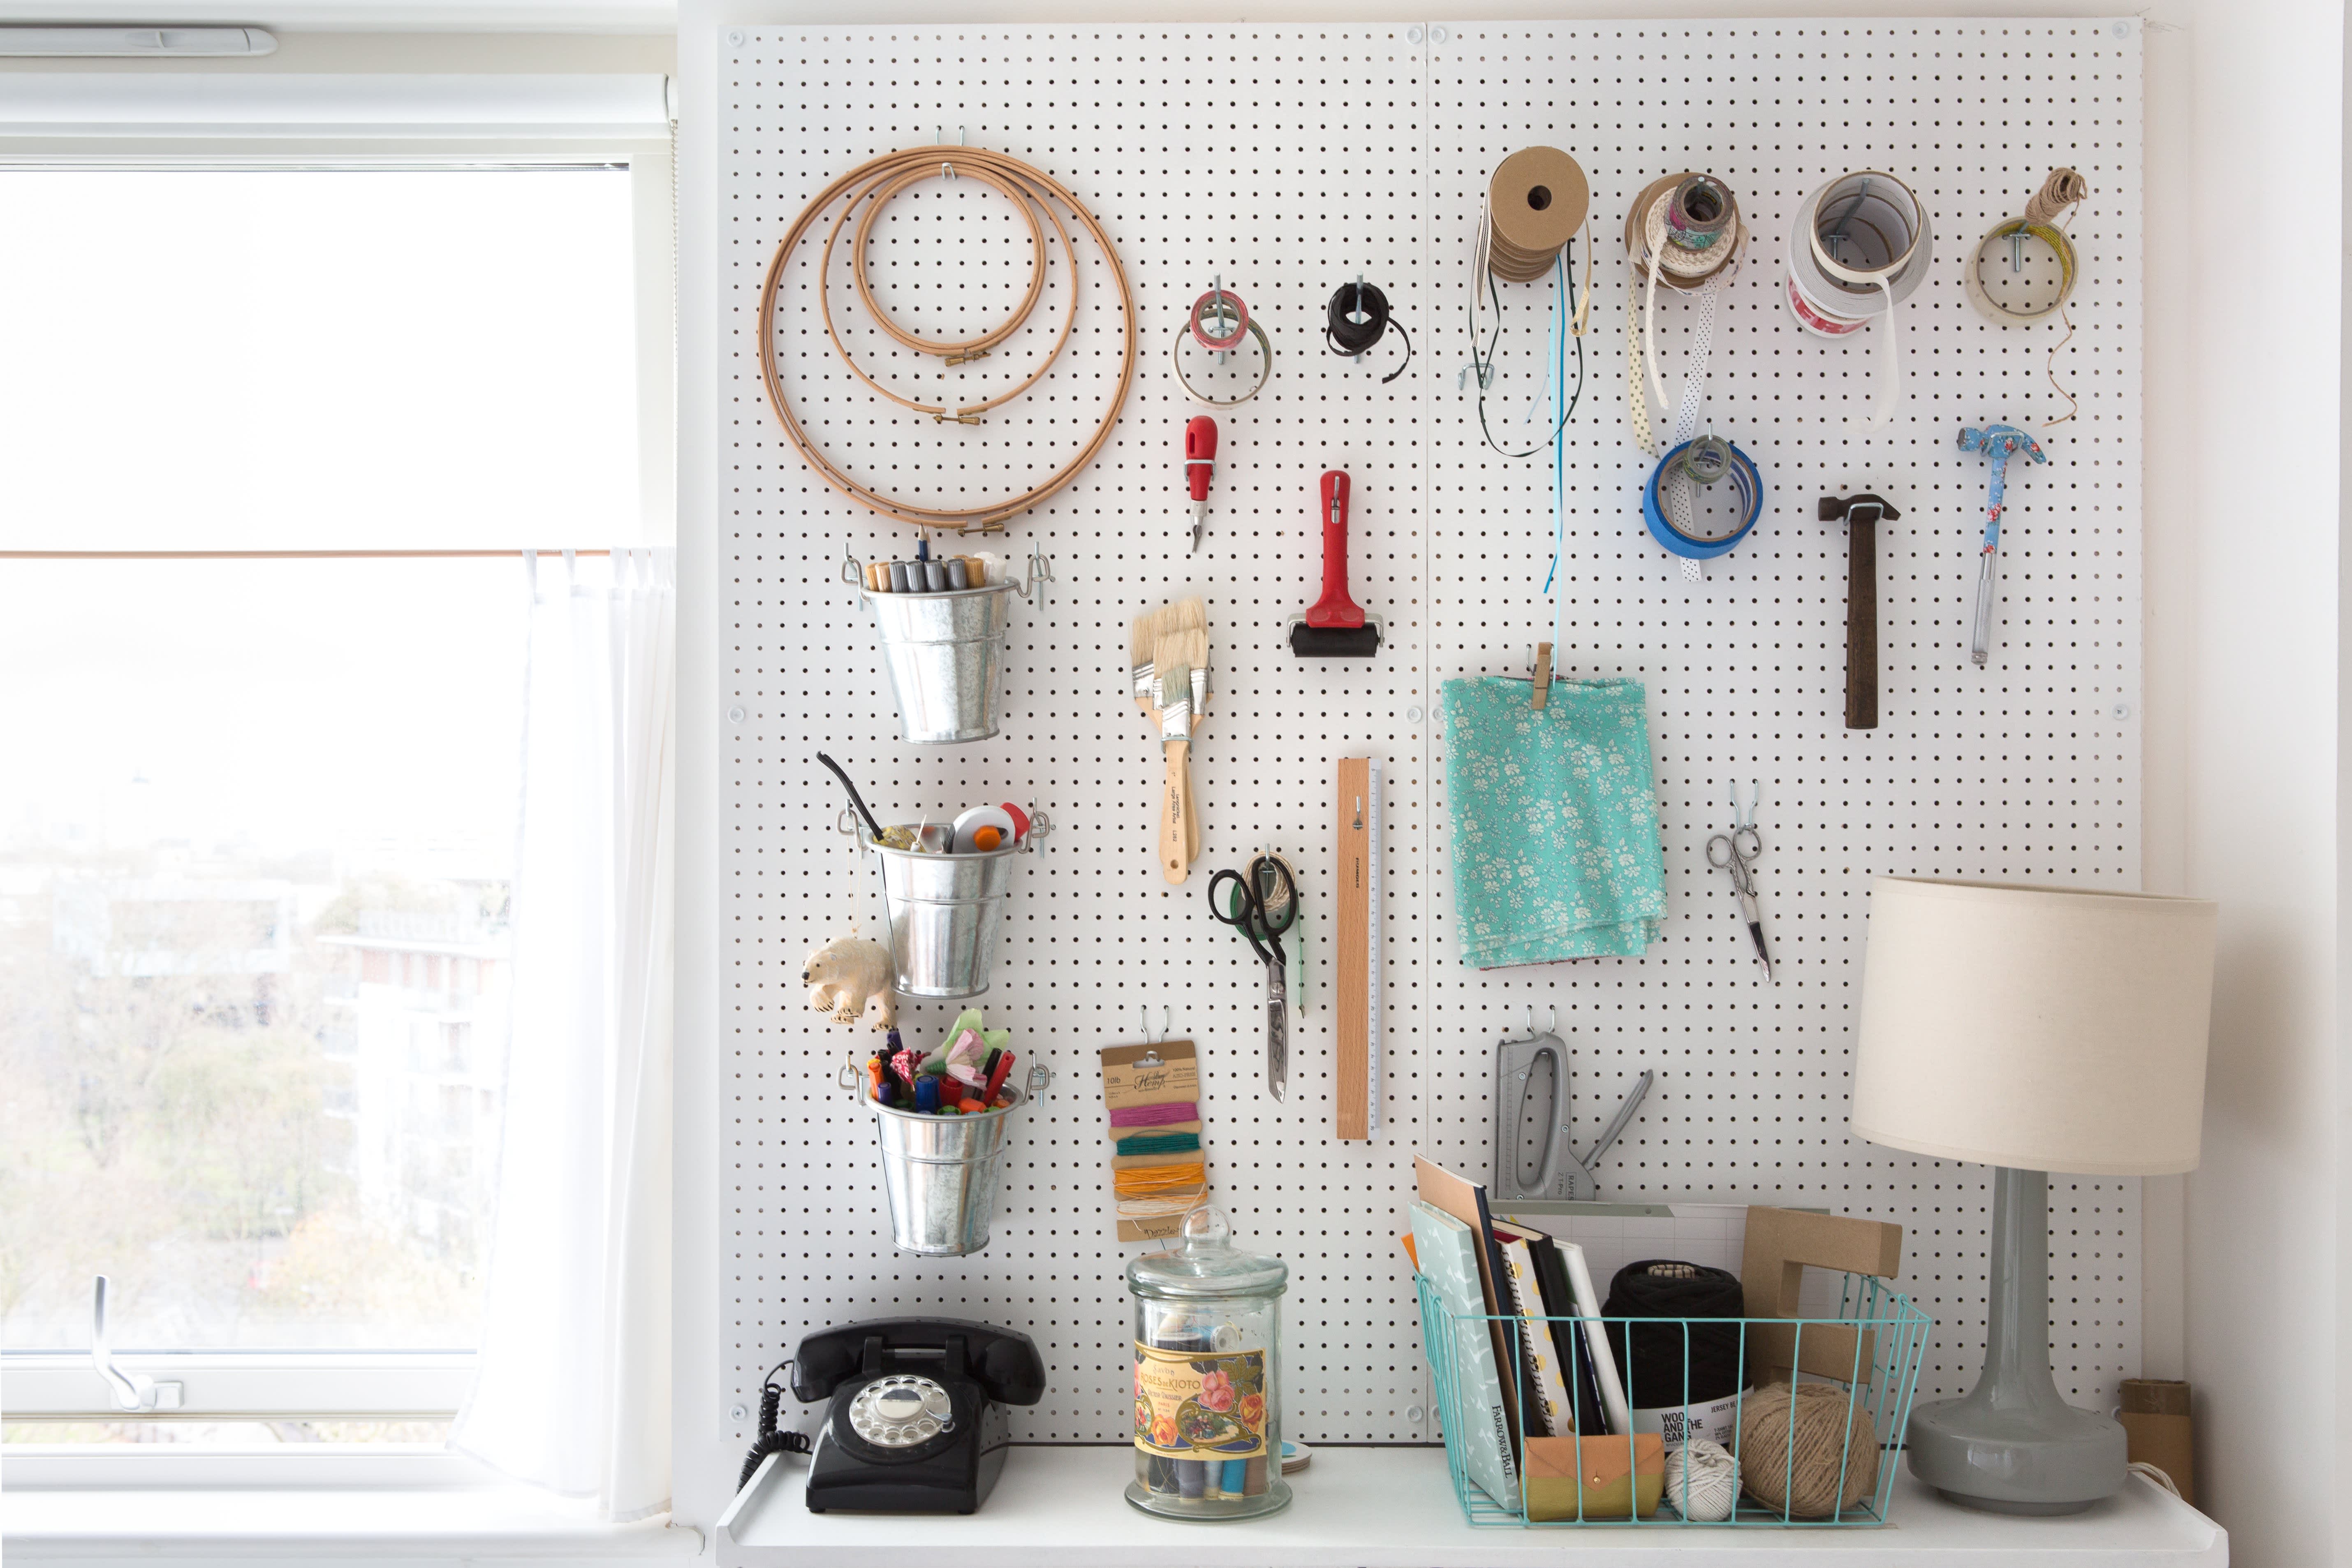 Craft Room Organization: Best Storage Ideas Story - Abbi Kirsten